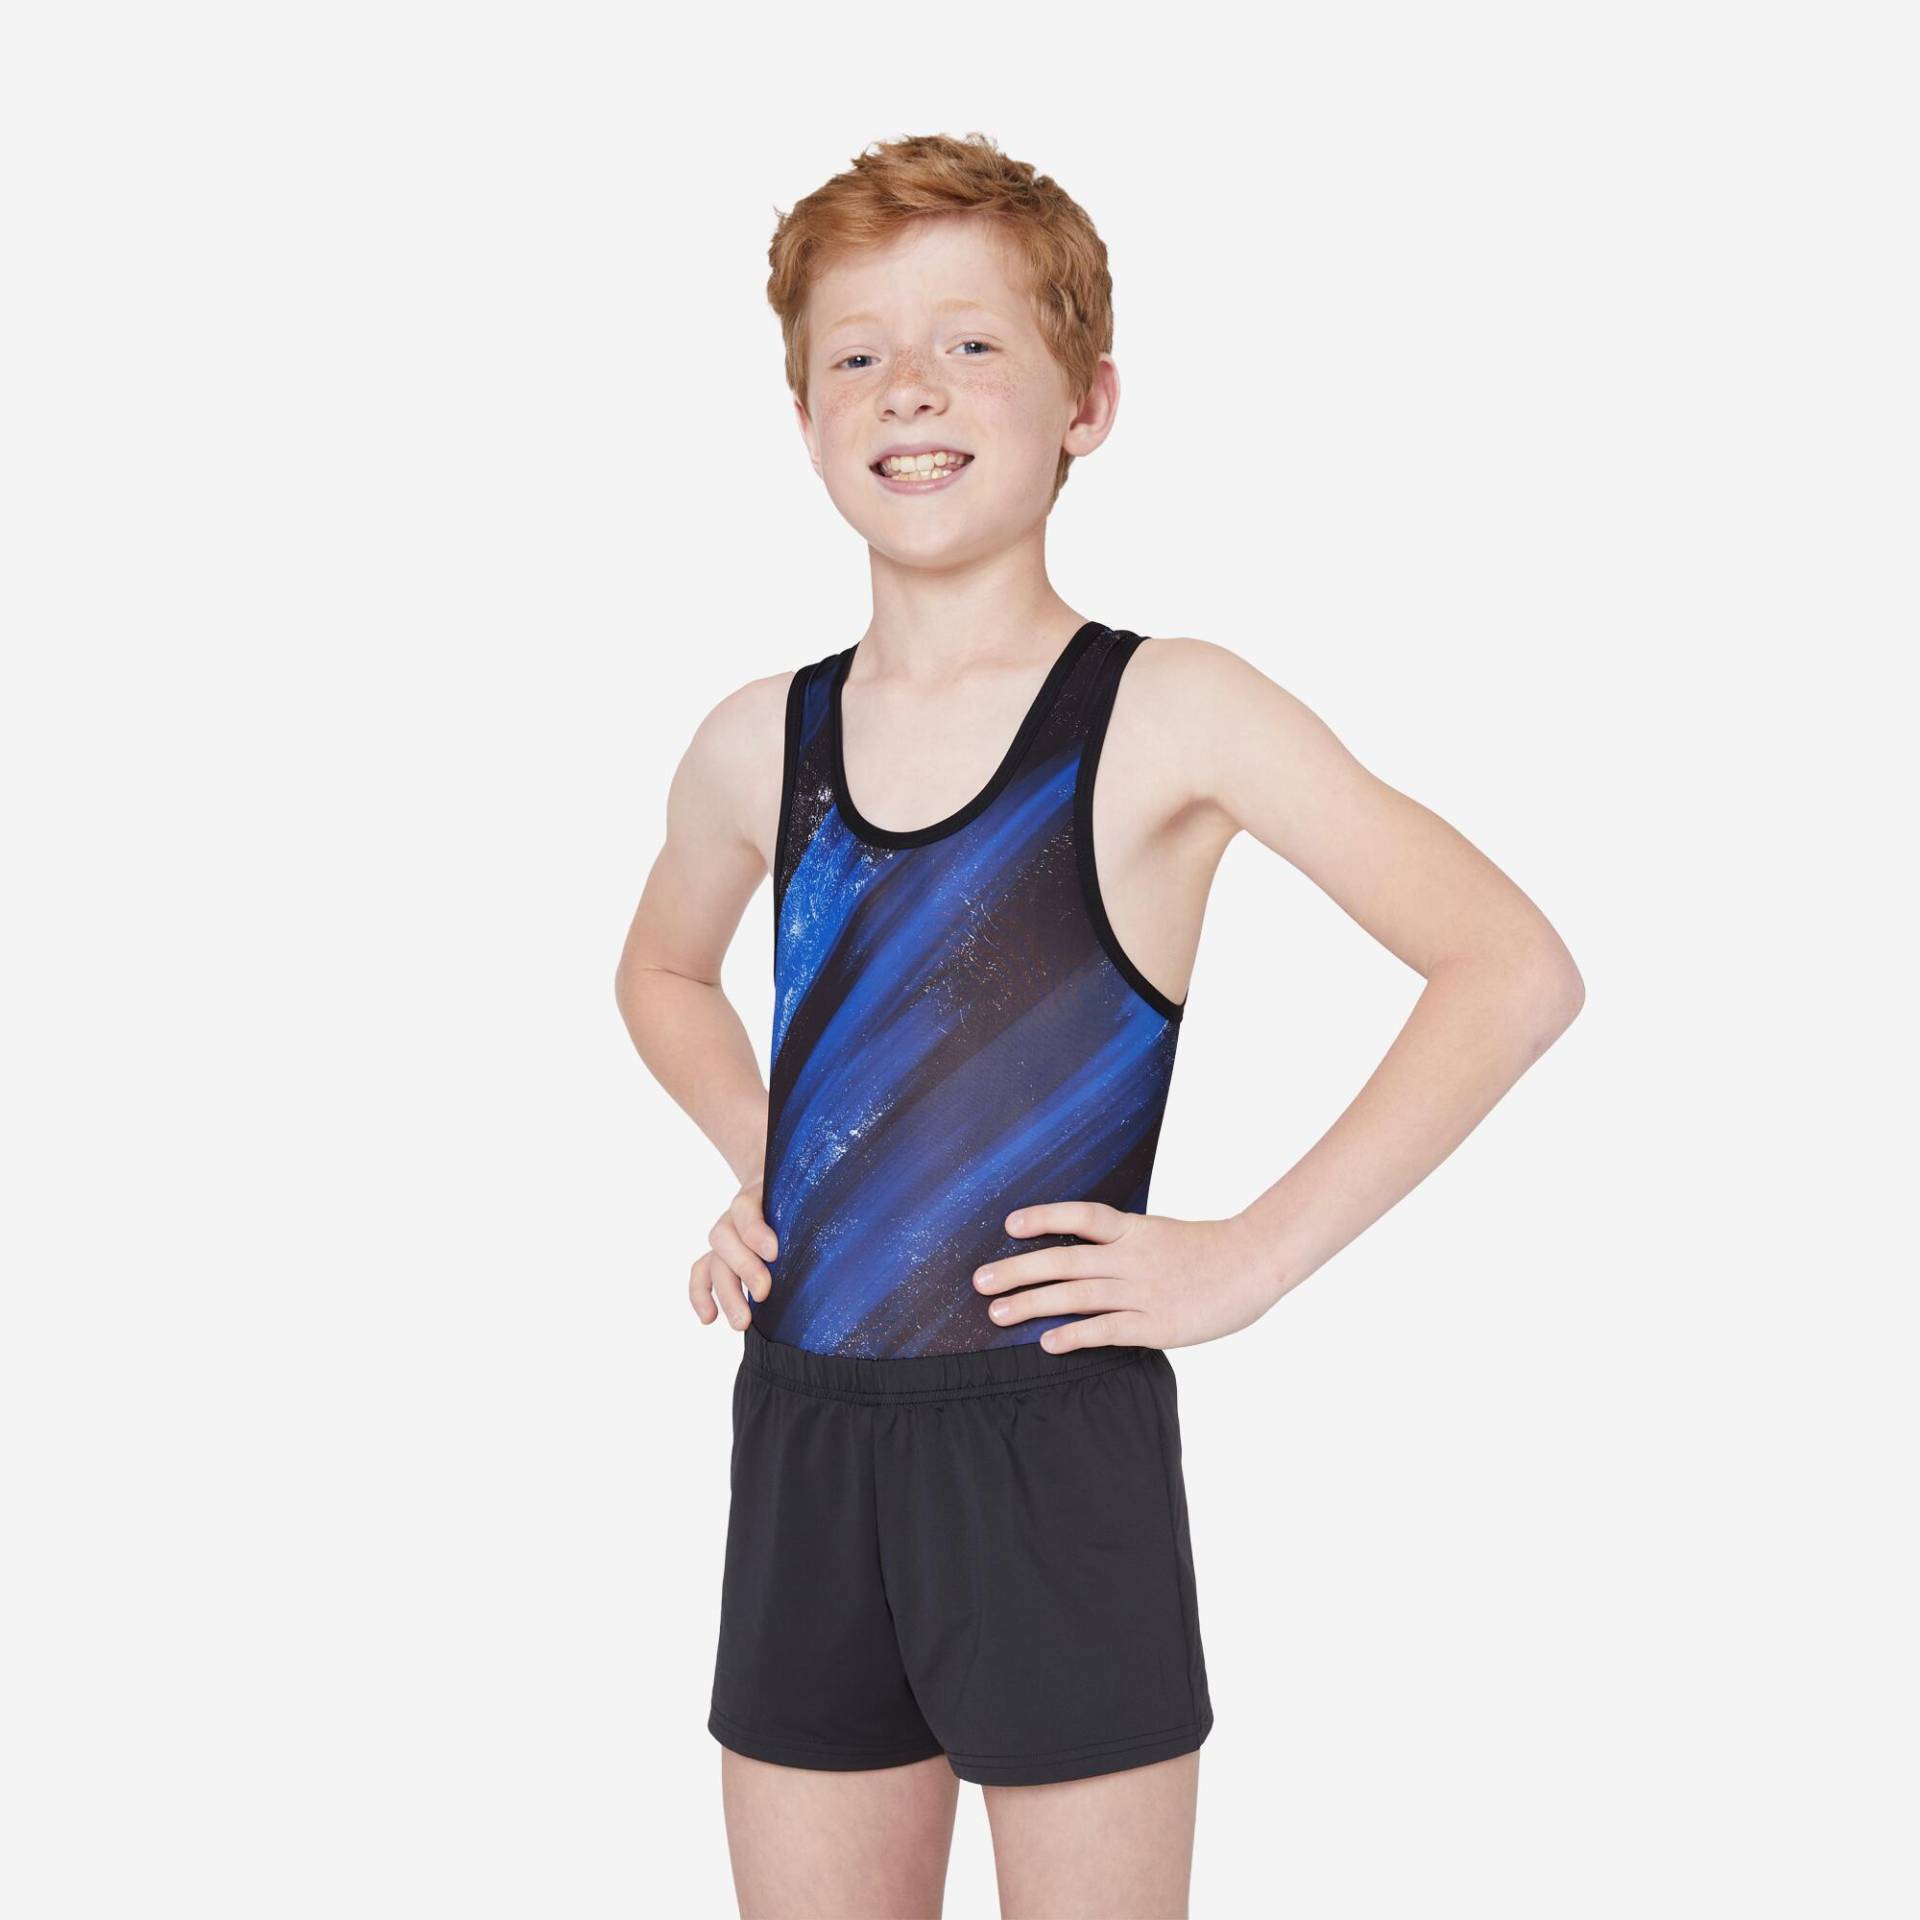 Gymnastikanzug Turnanzug Jungen - schwarz/blau bedruckt von Domyos